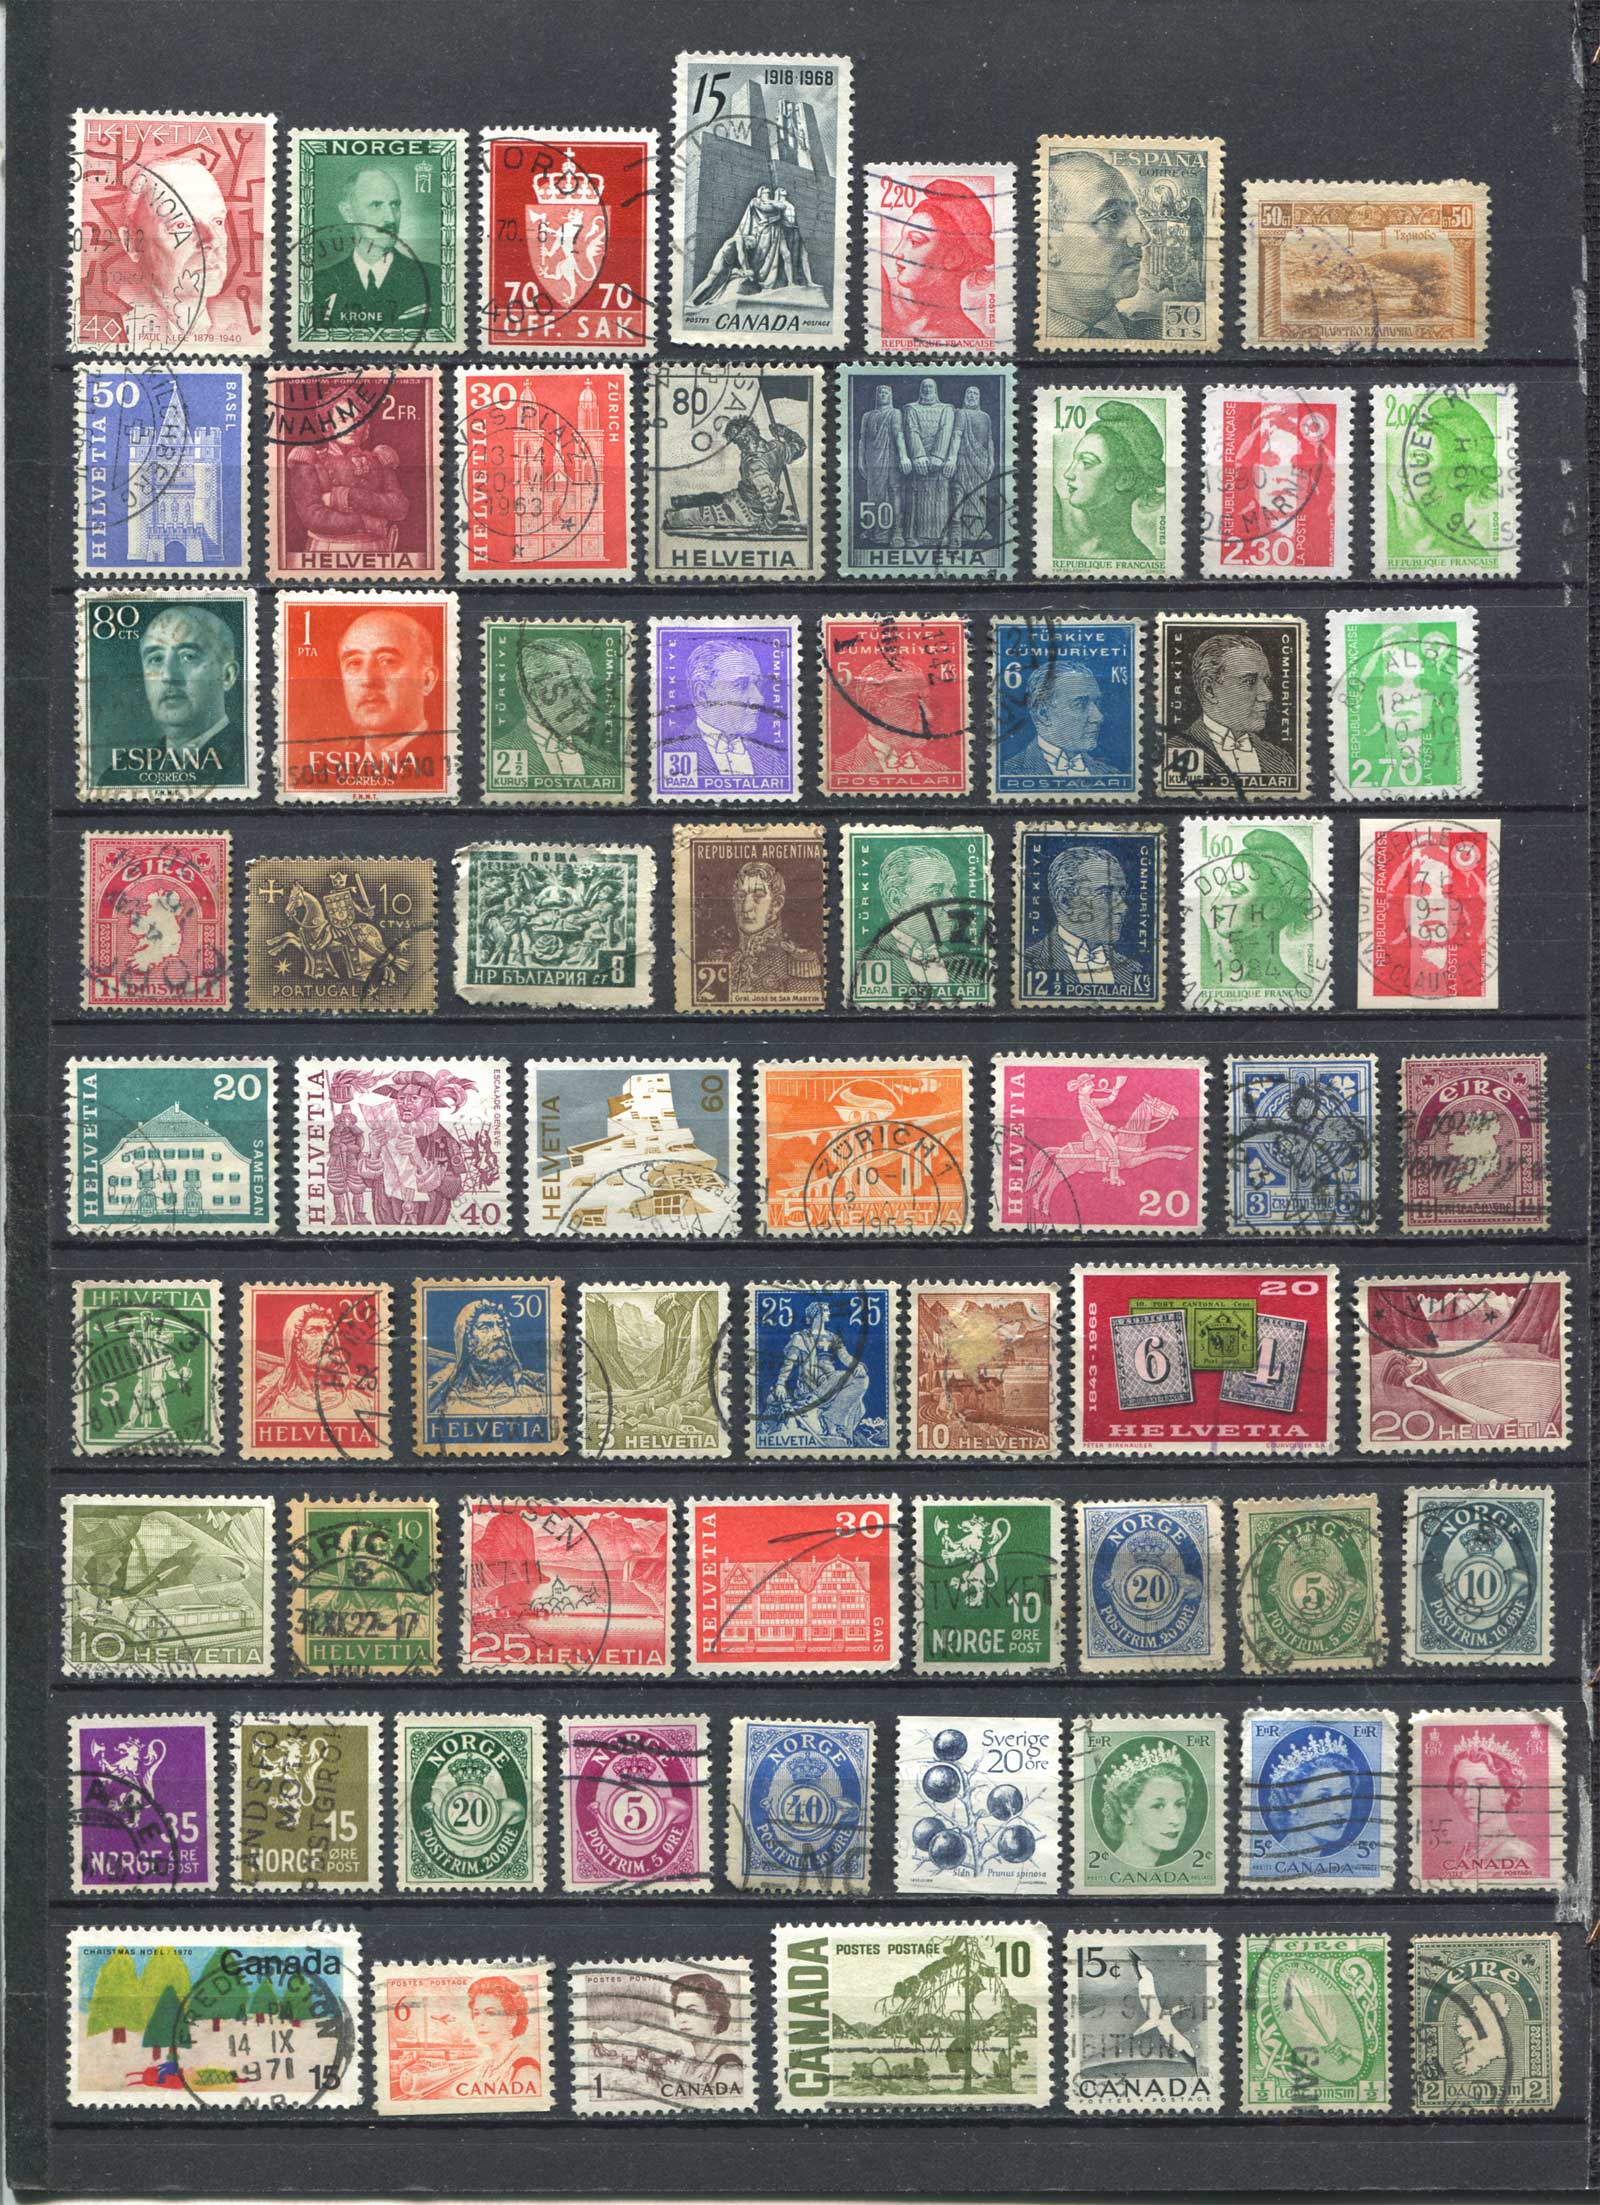 Самые большие коллекции марок